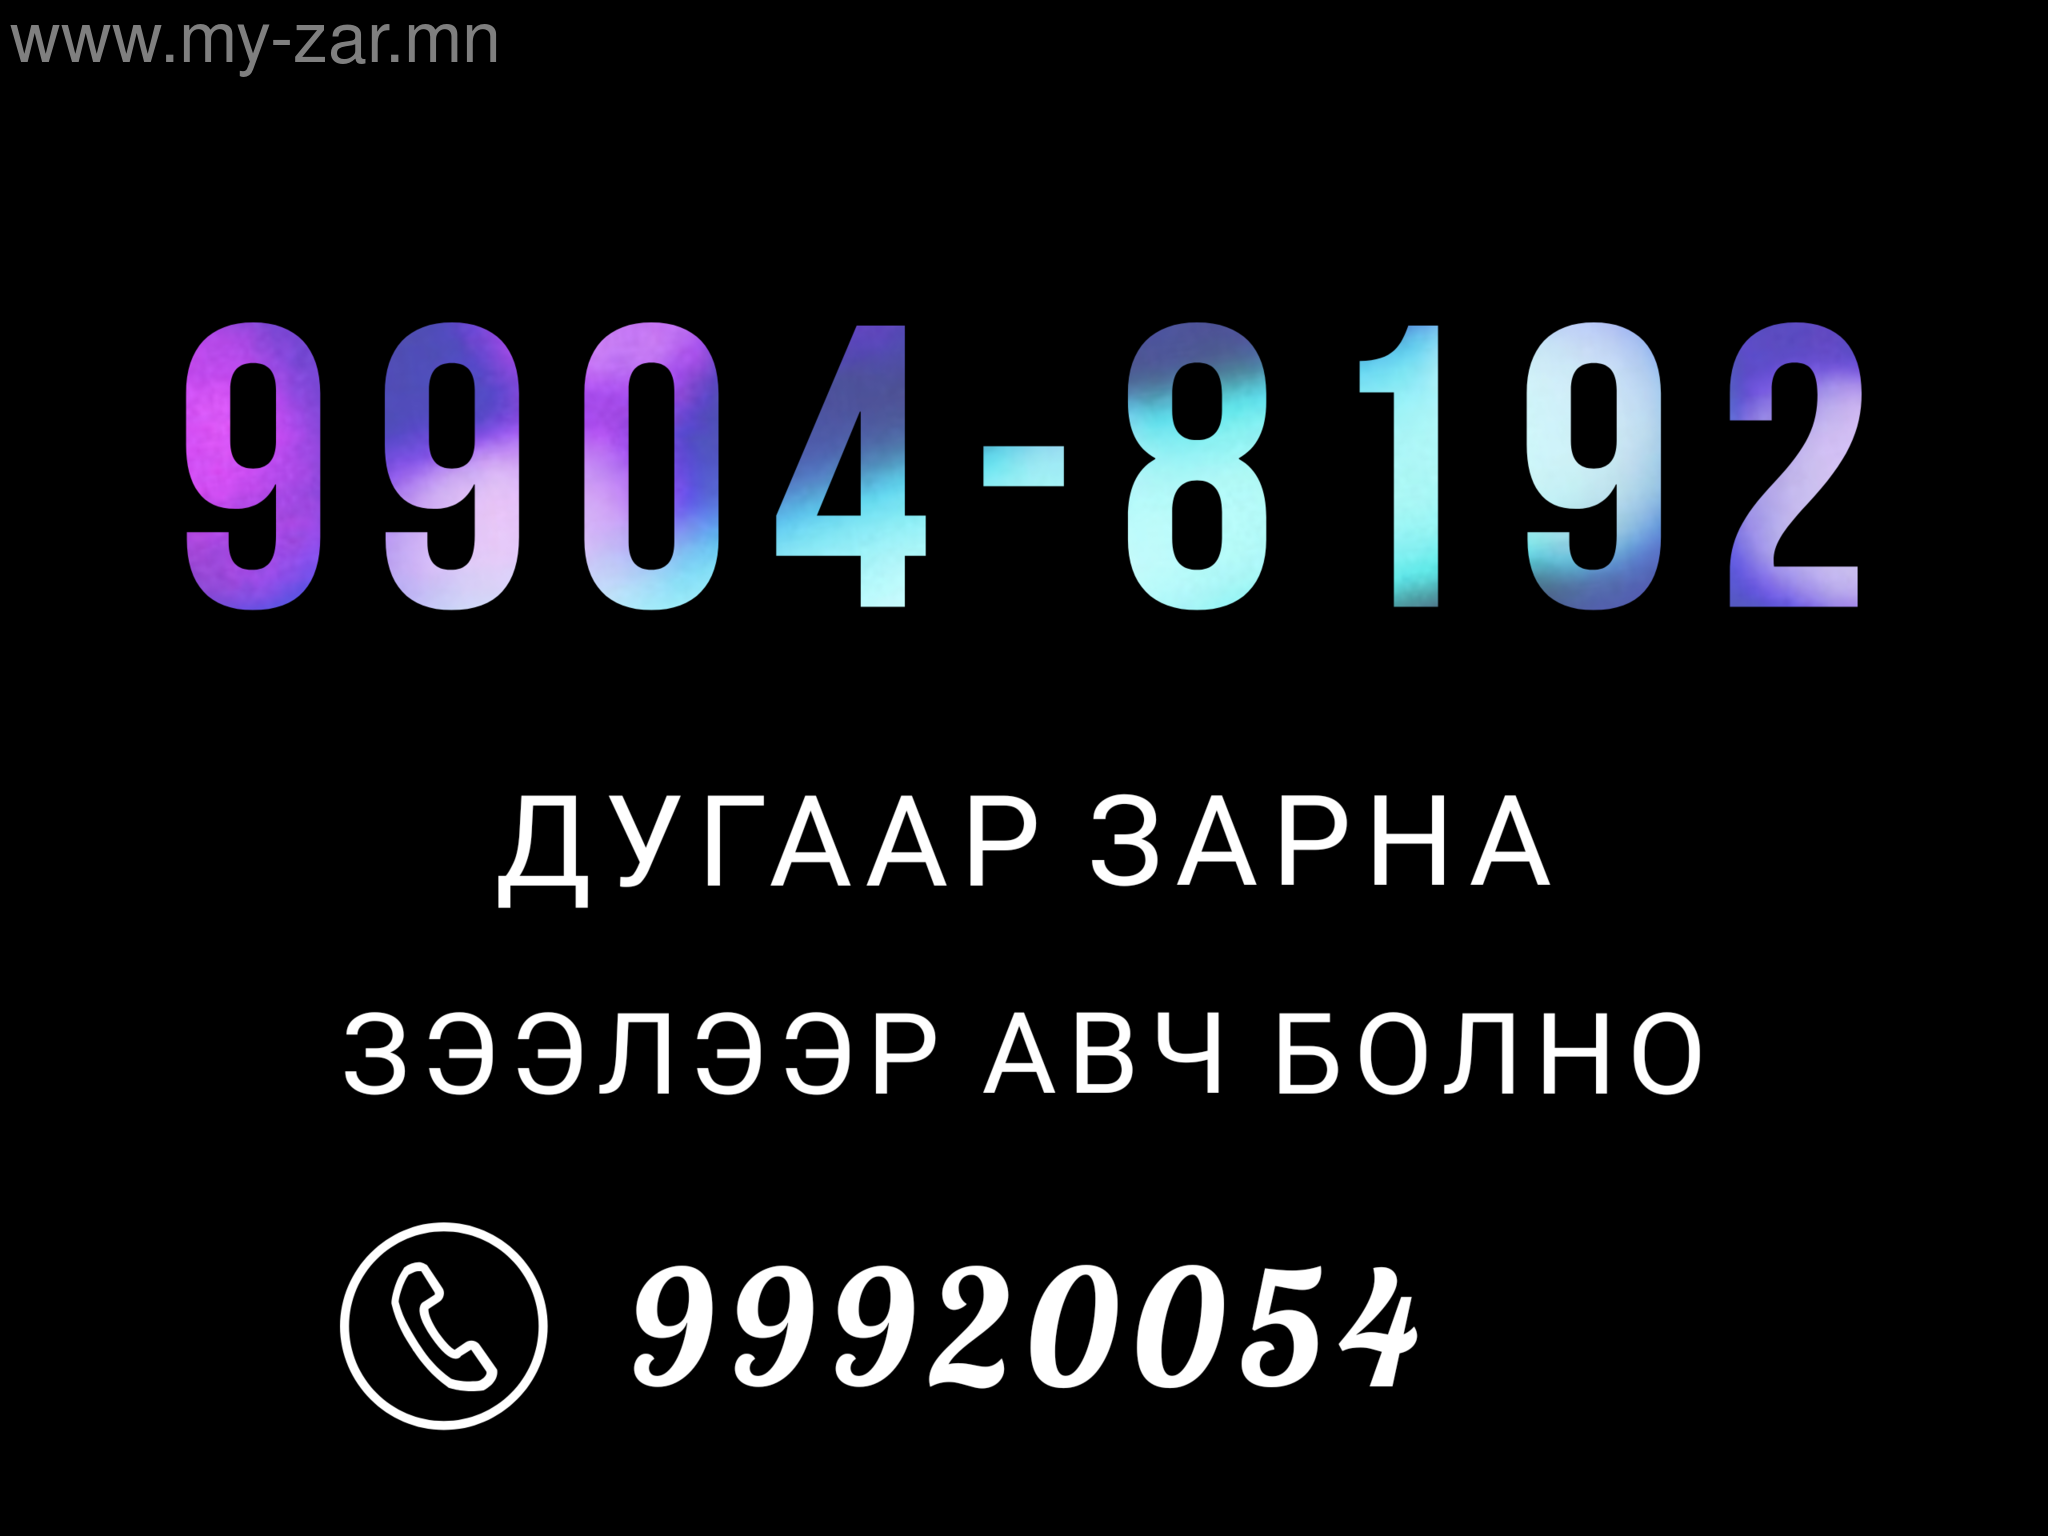 9904-8191 Дугаар зарна
Урьдчилгаа төлөөд зээлээр авч болно
Утас 99920054